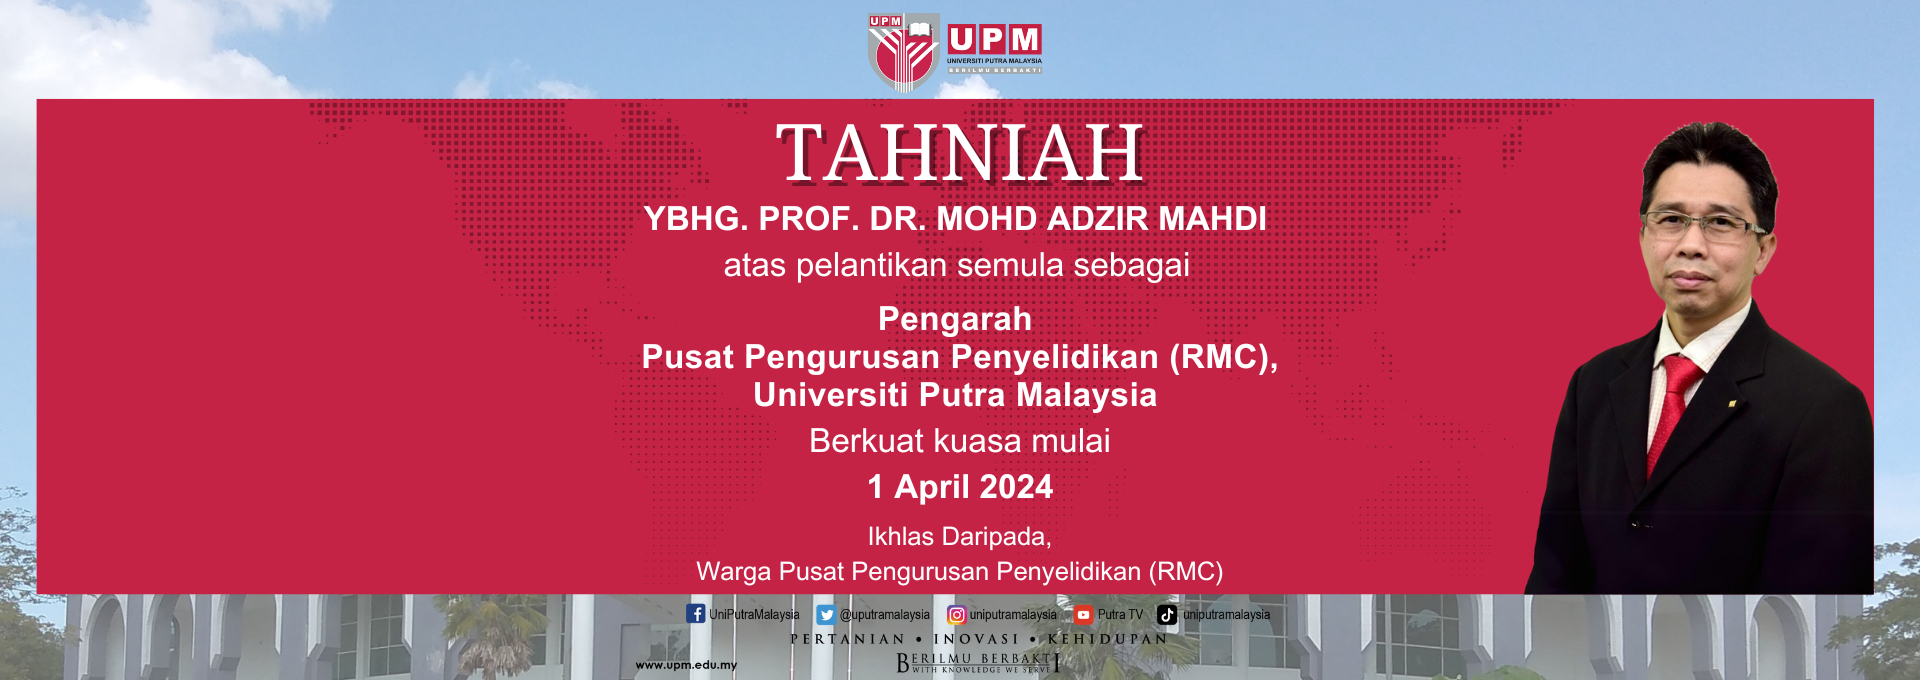 Tahniah YBhg. Prof. Dr. Mohd Adzir Mahdi atas pelantikan semula sebagai Pengarah, Pusat Pengurusan Penyelidikan (RMC), Universiti Putra Malaysia